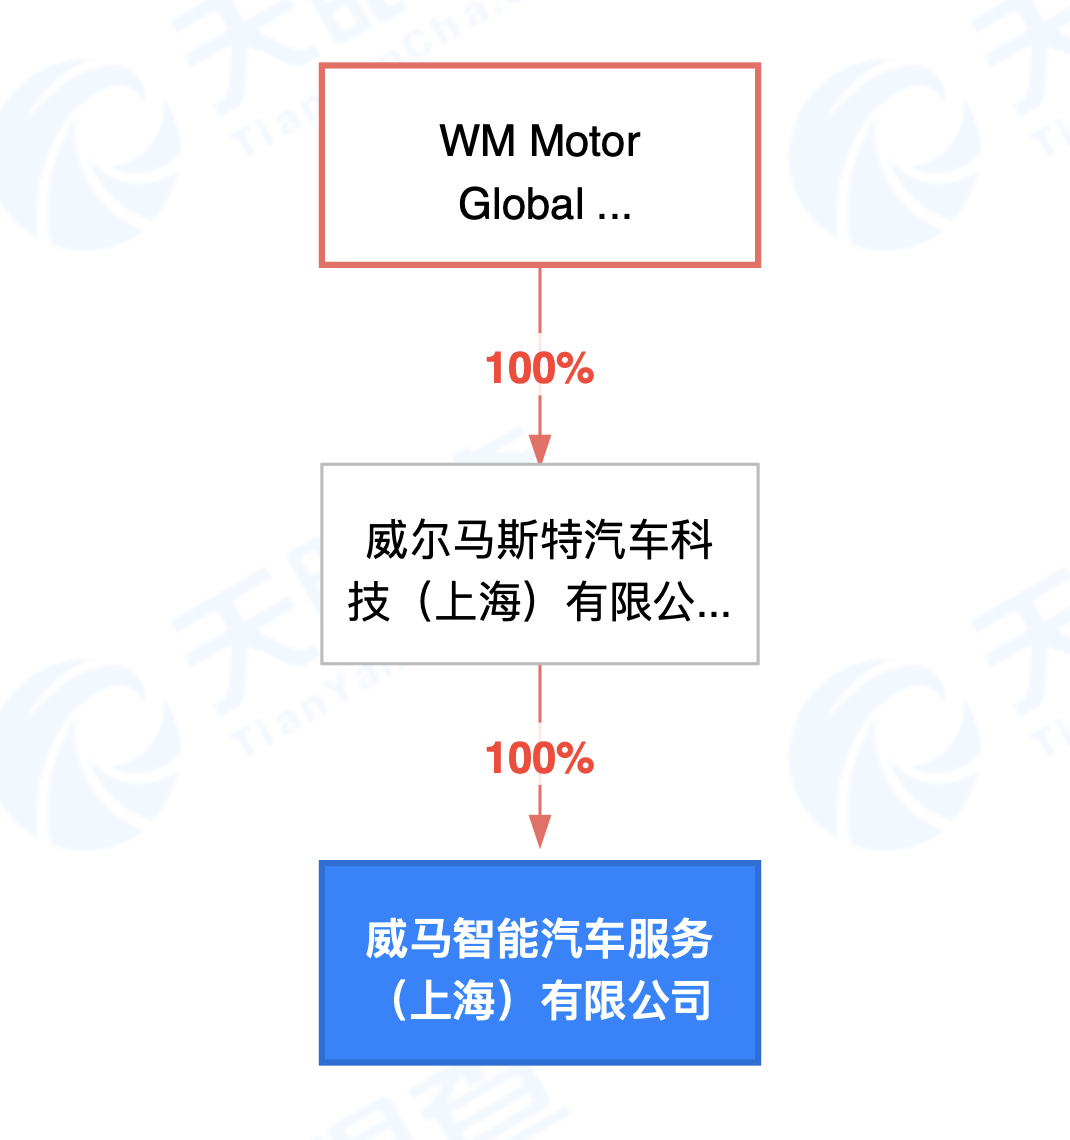 威马在上海成立智能汽车服务公司